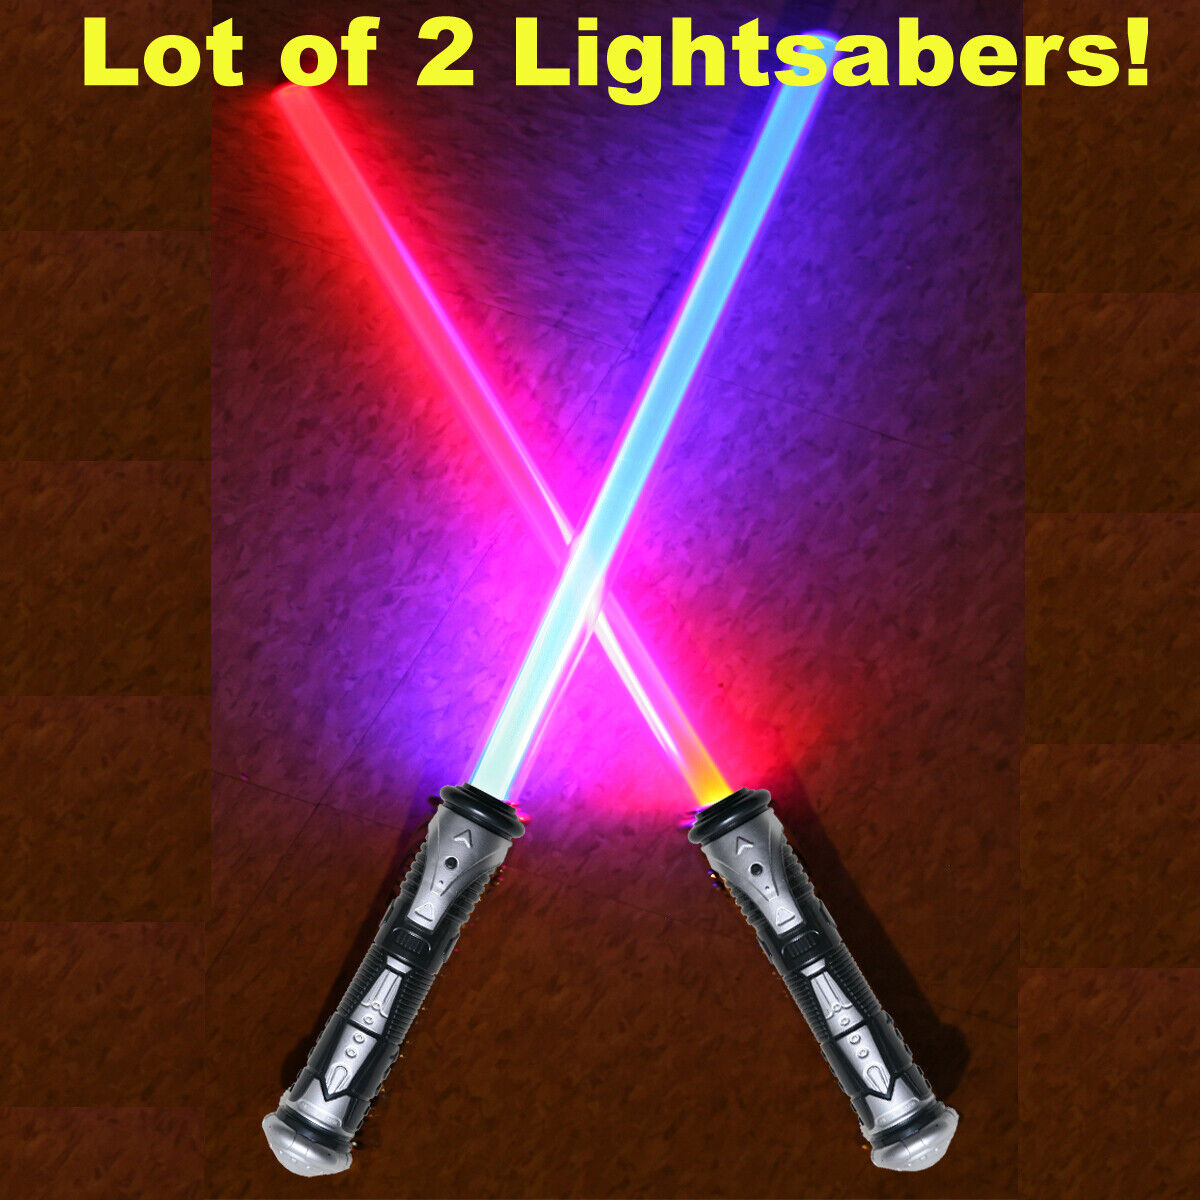 LOT OF 2 Lightsaber Star Wars FX Sound Force Light Saber Sword Toy Blade NEW